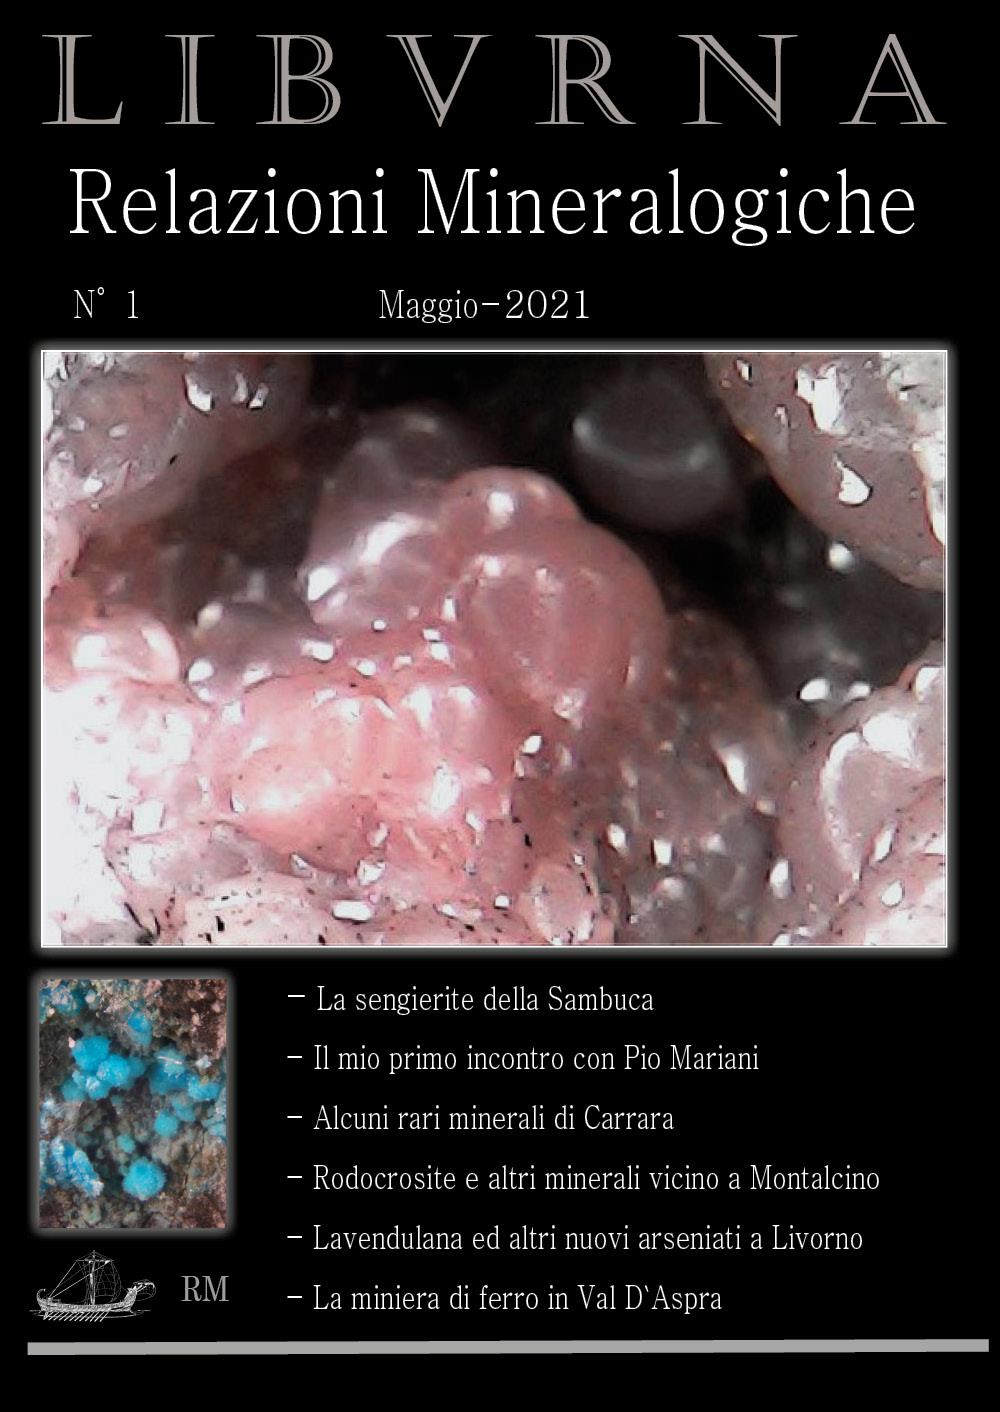 LIBVRNA N°1, minerali Toscana